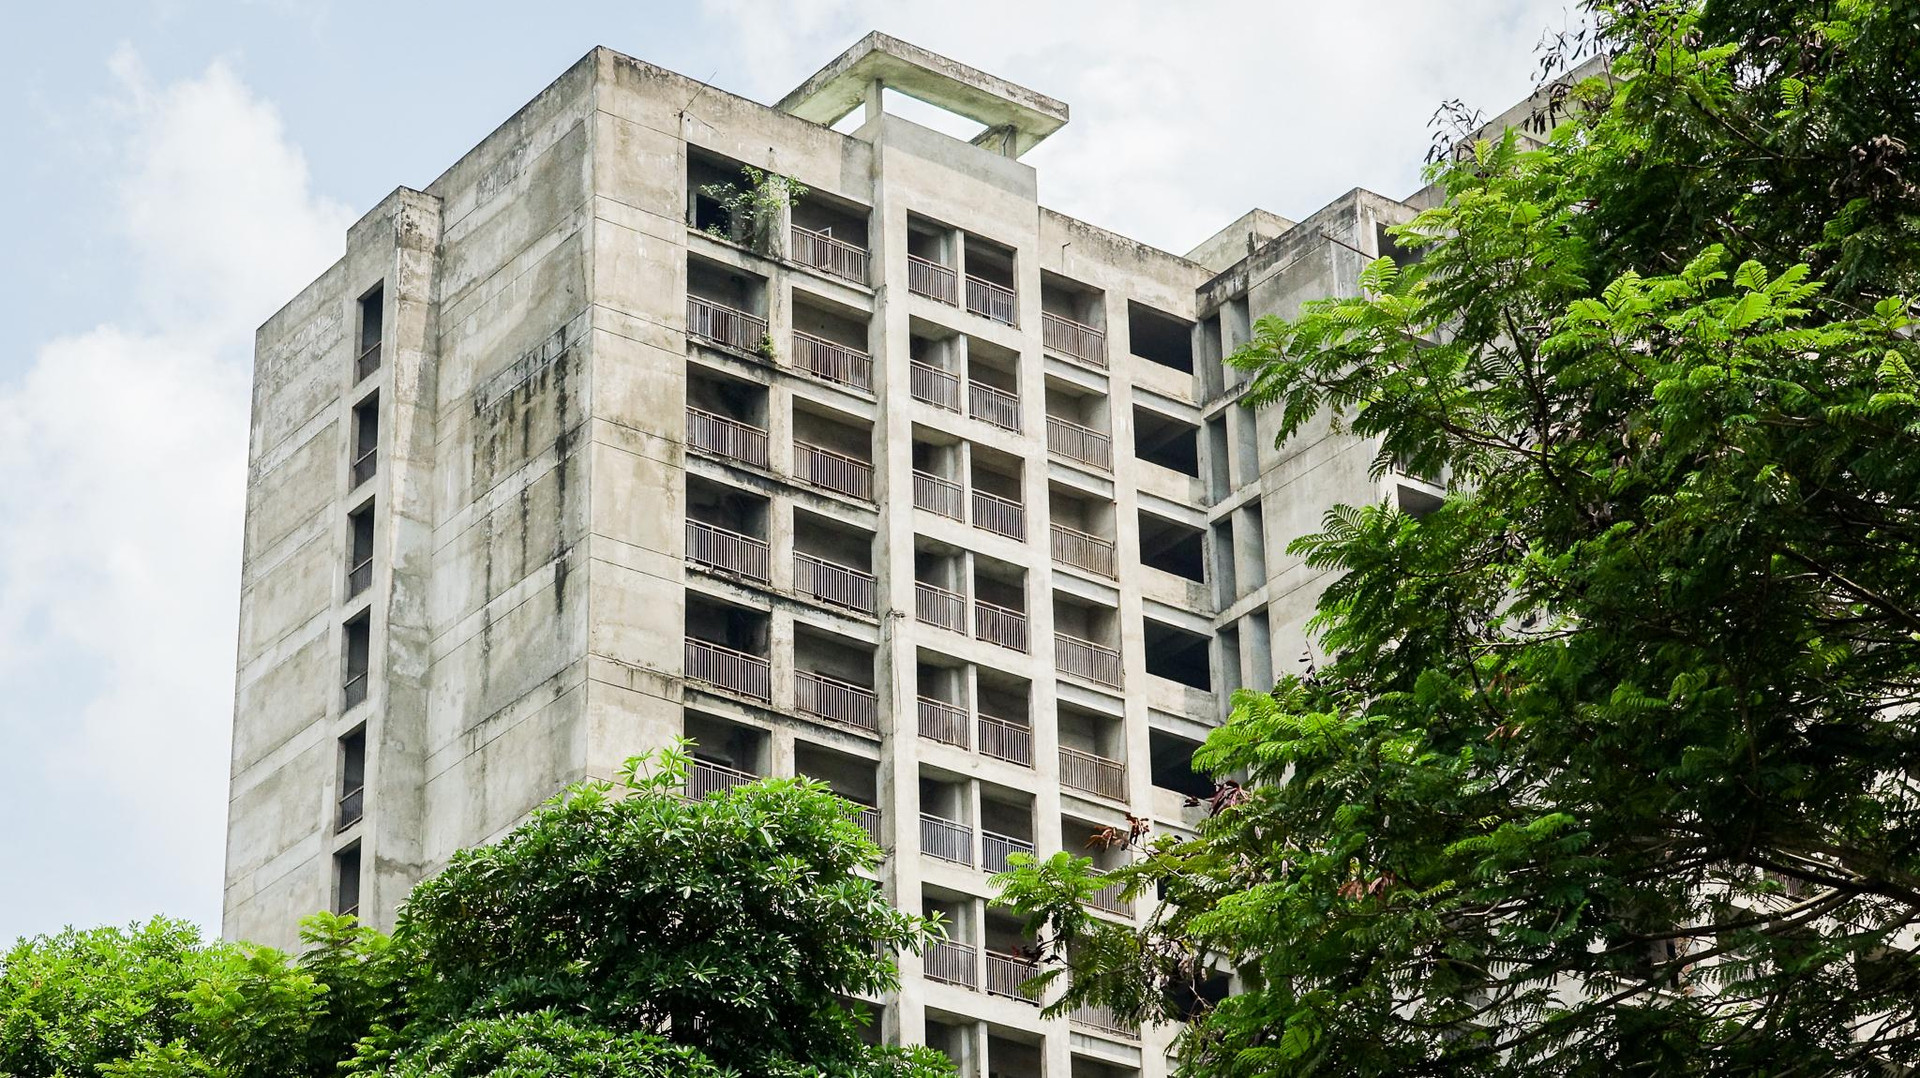 Toàn cảnh hàng nghìn căn hộ chung cư người dân Hà Nội sắp được thuê giá rẻ - Ảnh 7.